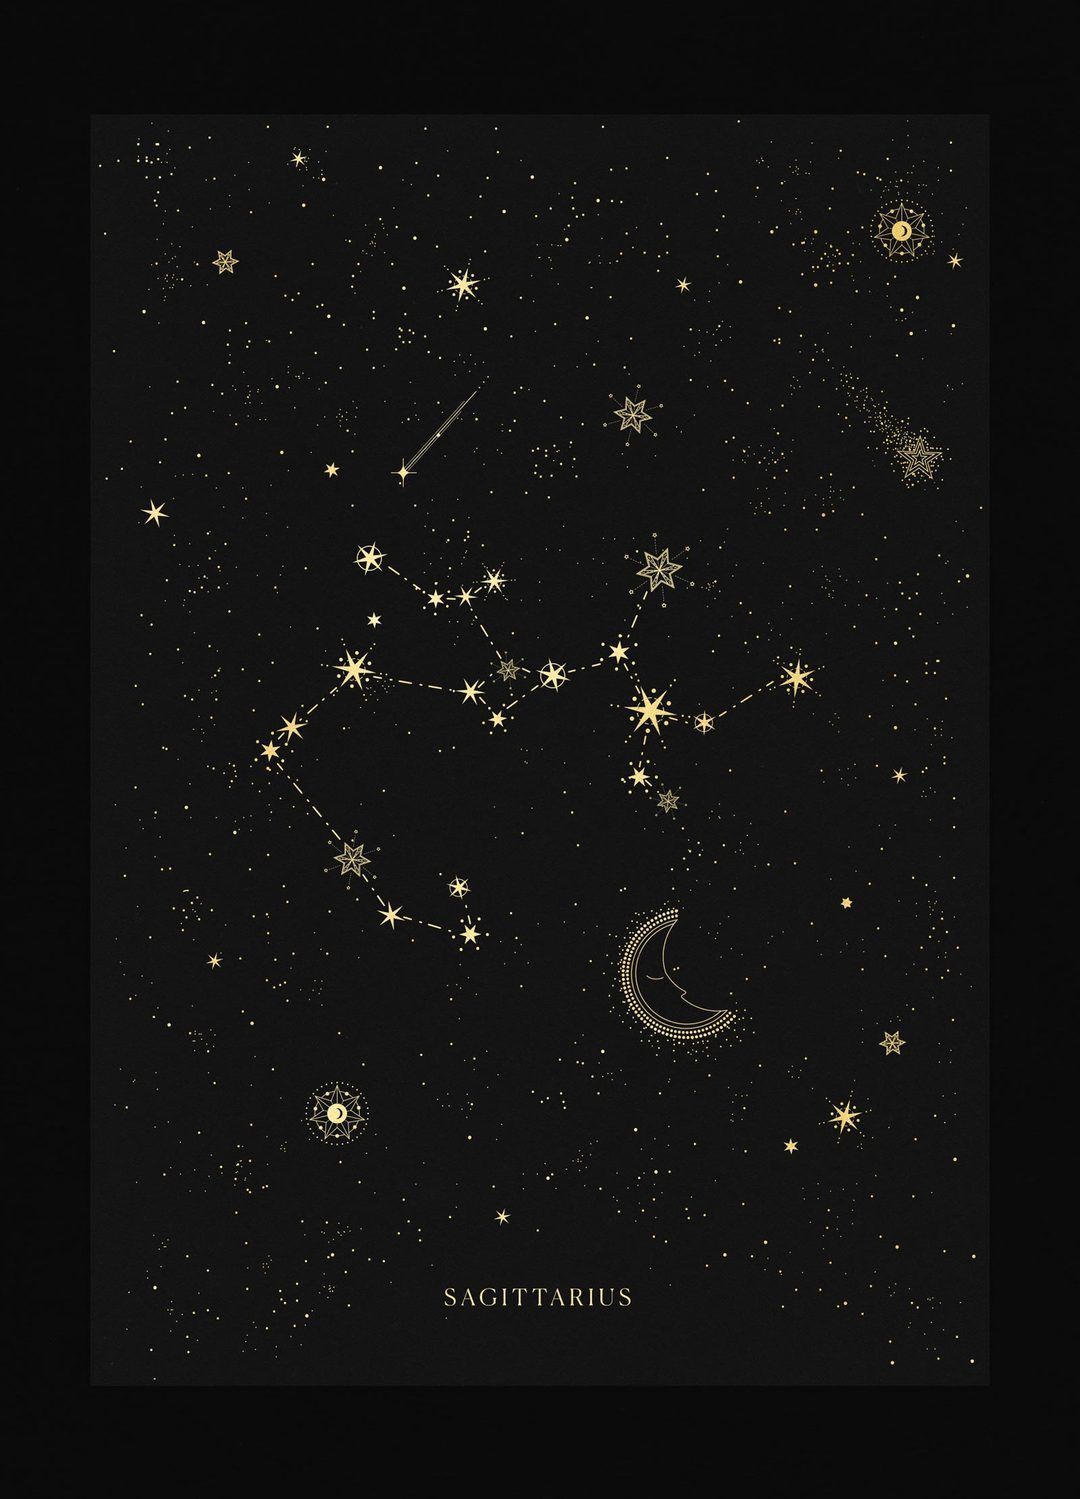 Sagittarius Constellation. Aquarius constellation tattoo